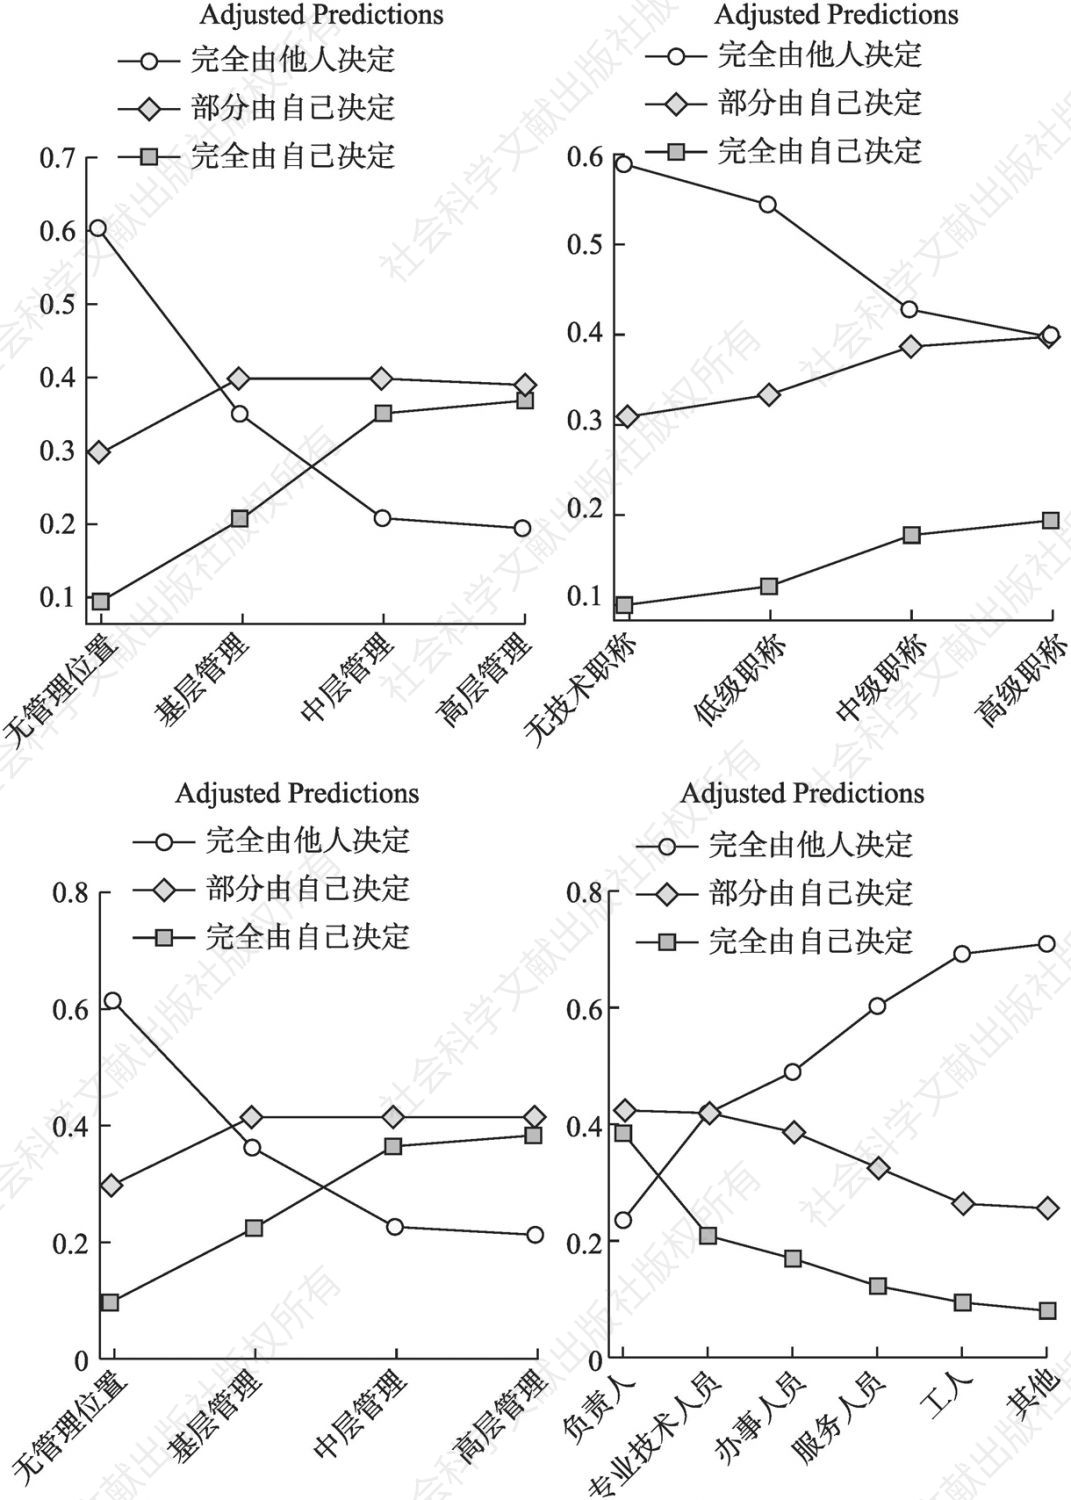 图6-4 管理位置（左上、左下）、技能水平（右上）和职业类别（右下）对工作自主权影响的边际效应